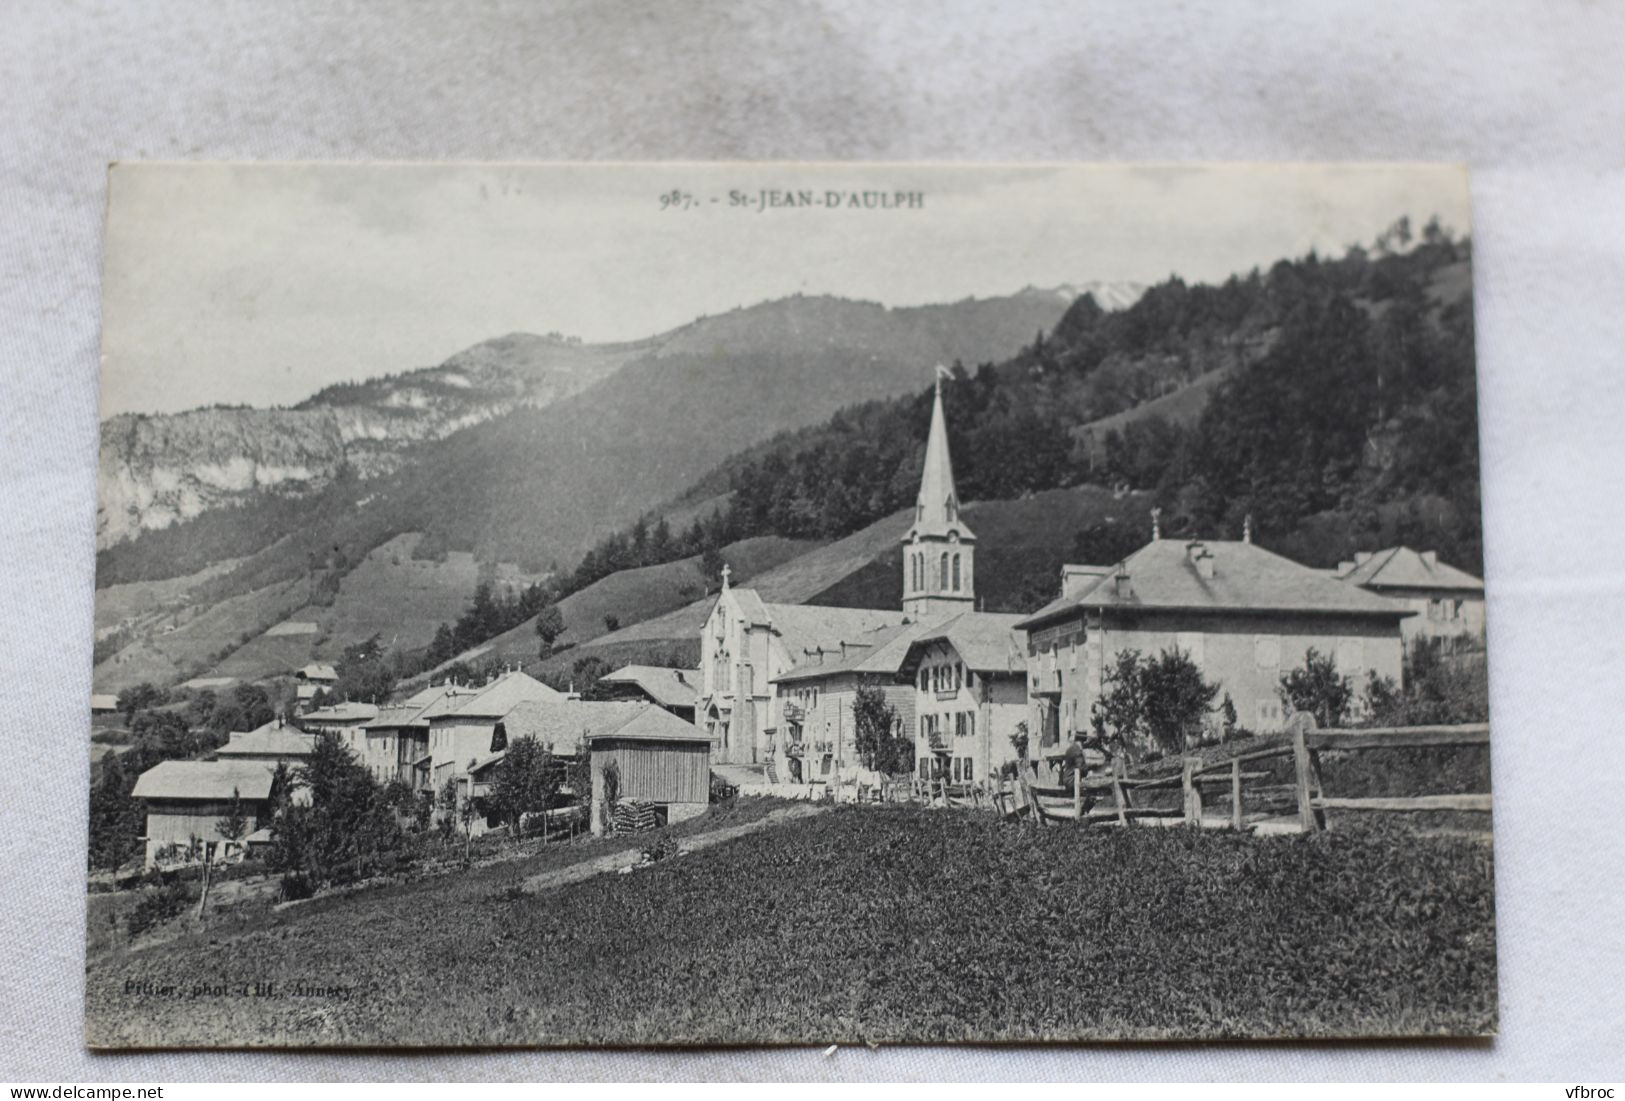 Saint Jean D'Aulph, Haute Savoie 74 - Saint-Jean-d'Aulps